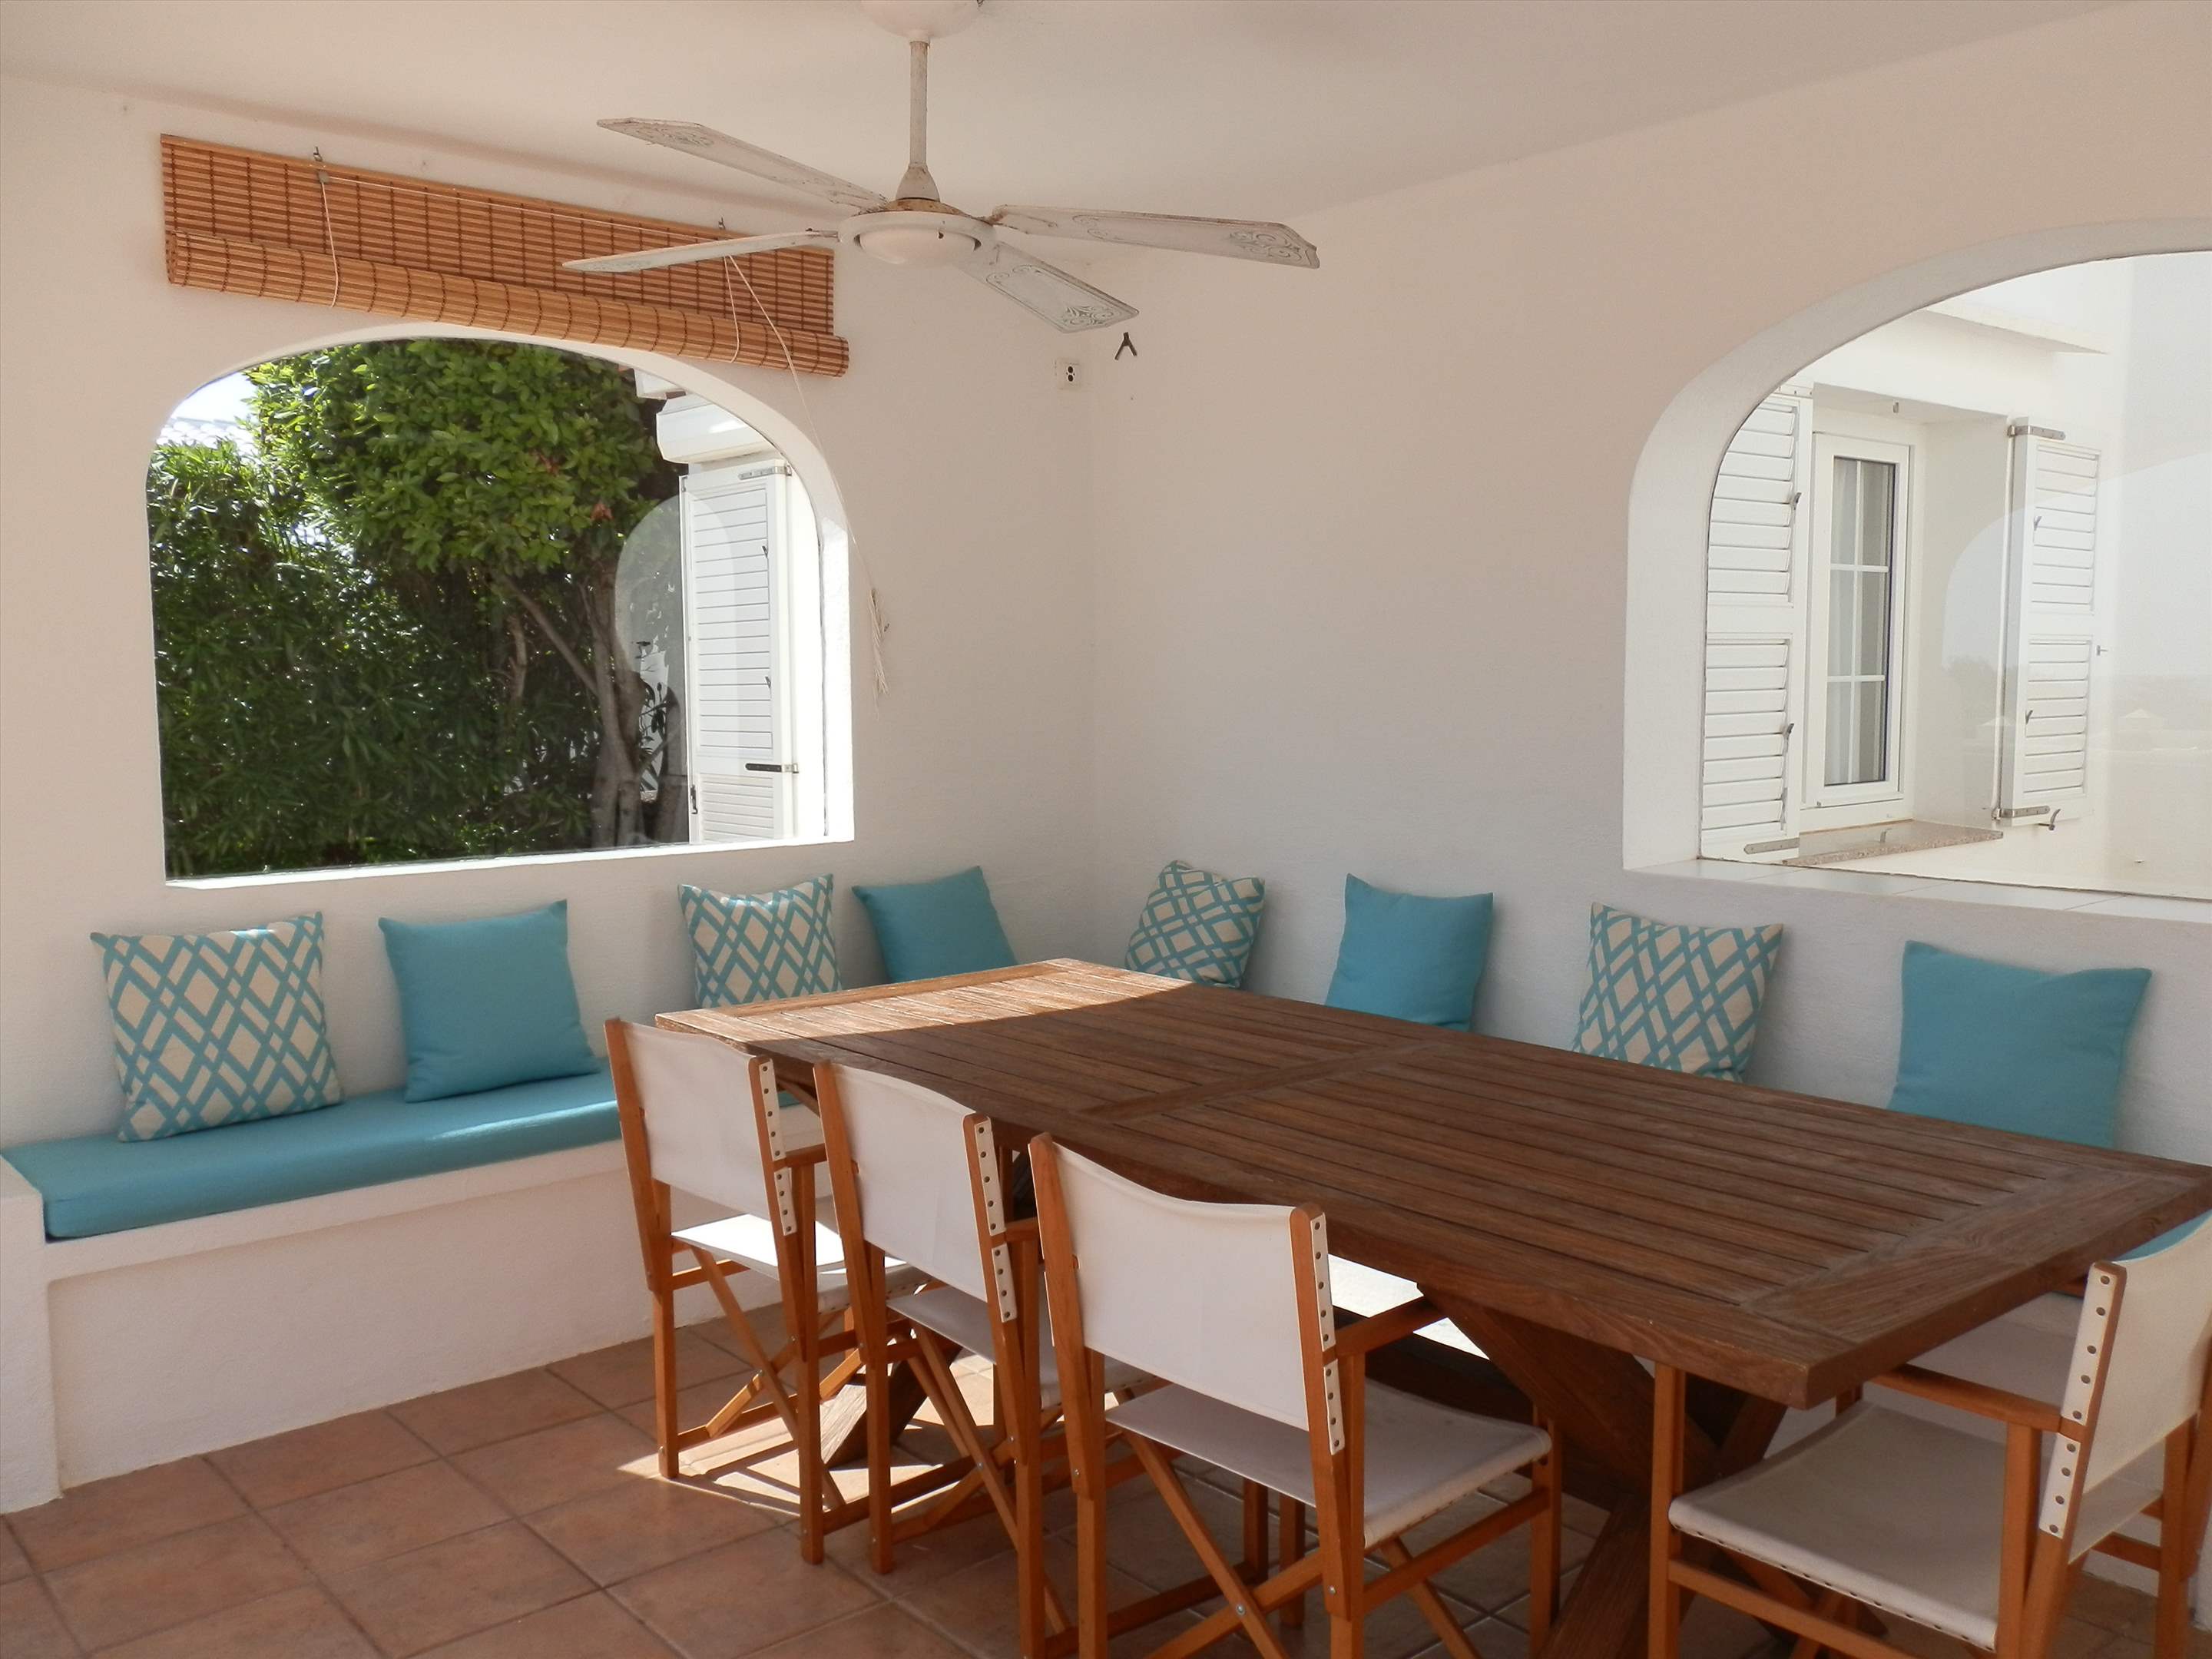 Casa del Mar de Ana-Cristo, 5 Bedroom rate, 5 bedroom villa in Mahon, San Luis & South East, Menorca Photo #9